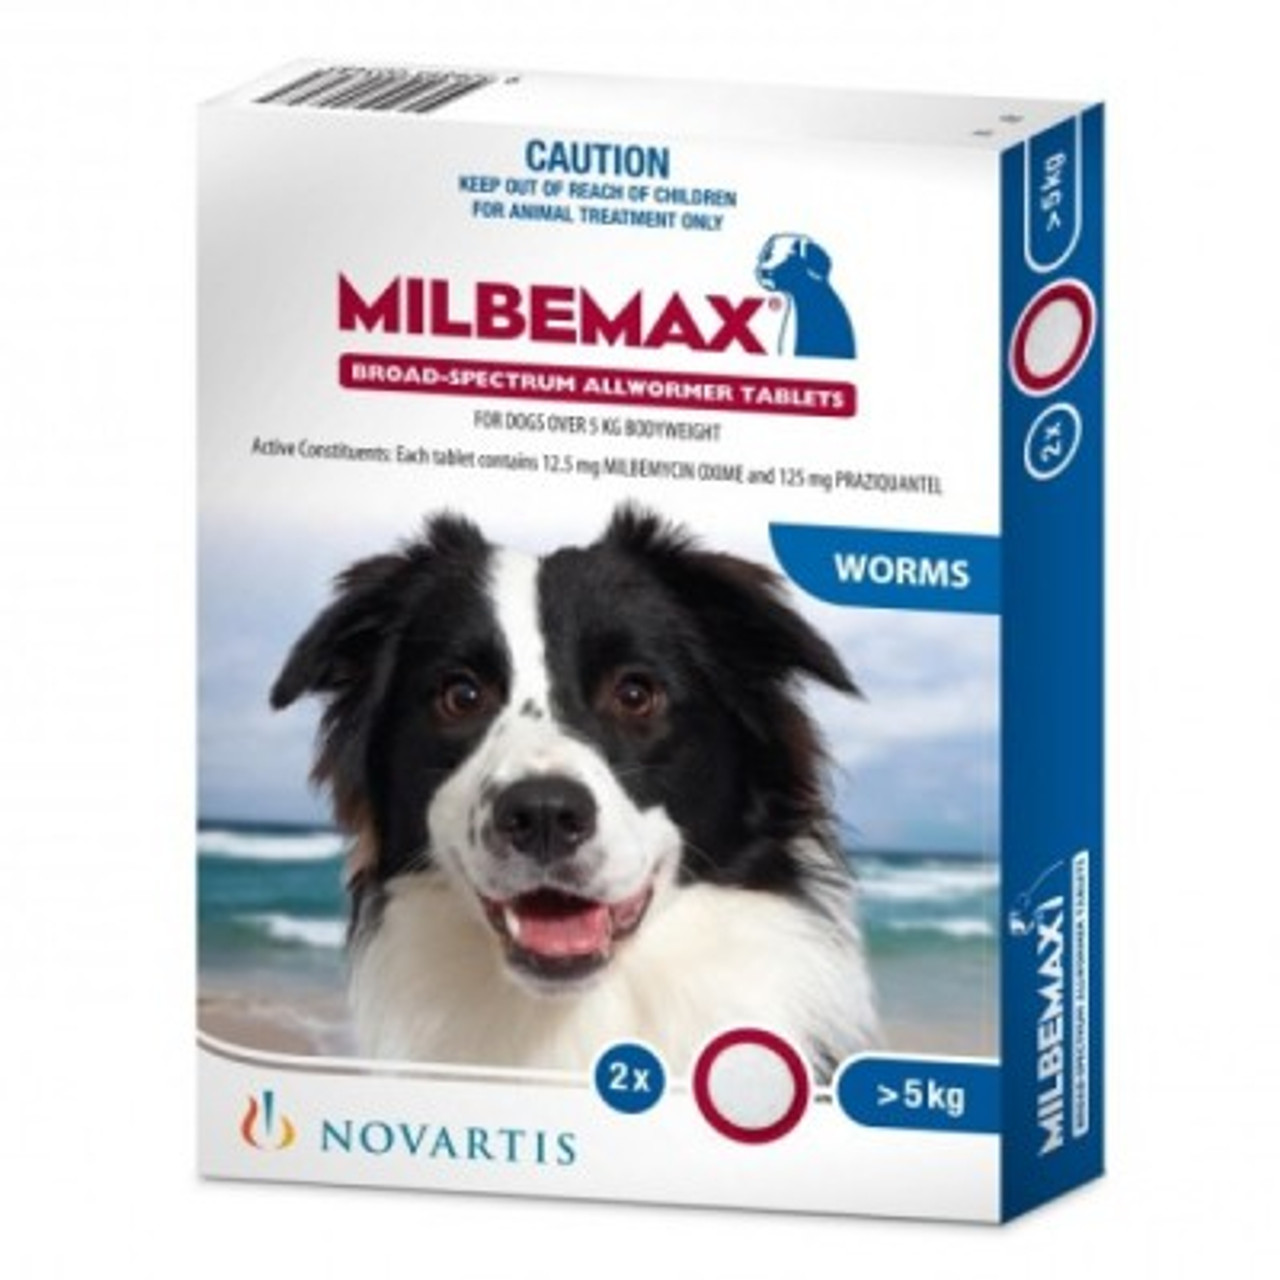 Milbemax tab vermifuge spectre large chien 5 kg et plus 2 comprimés